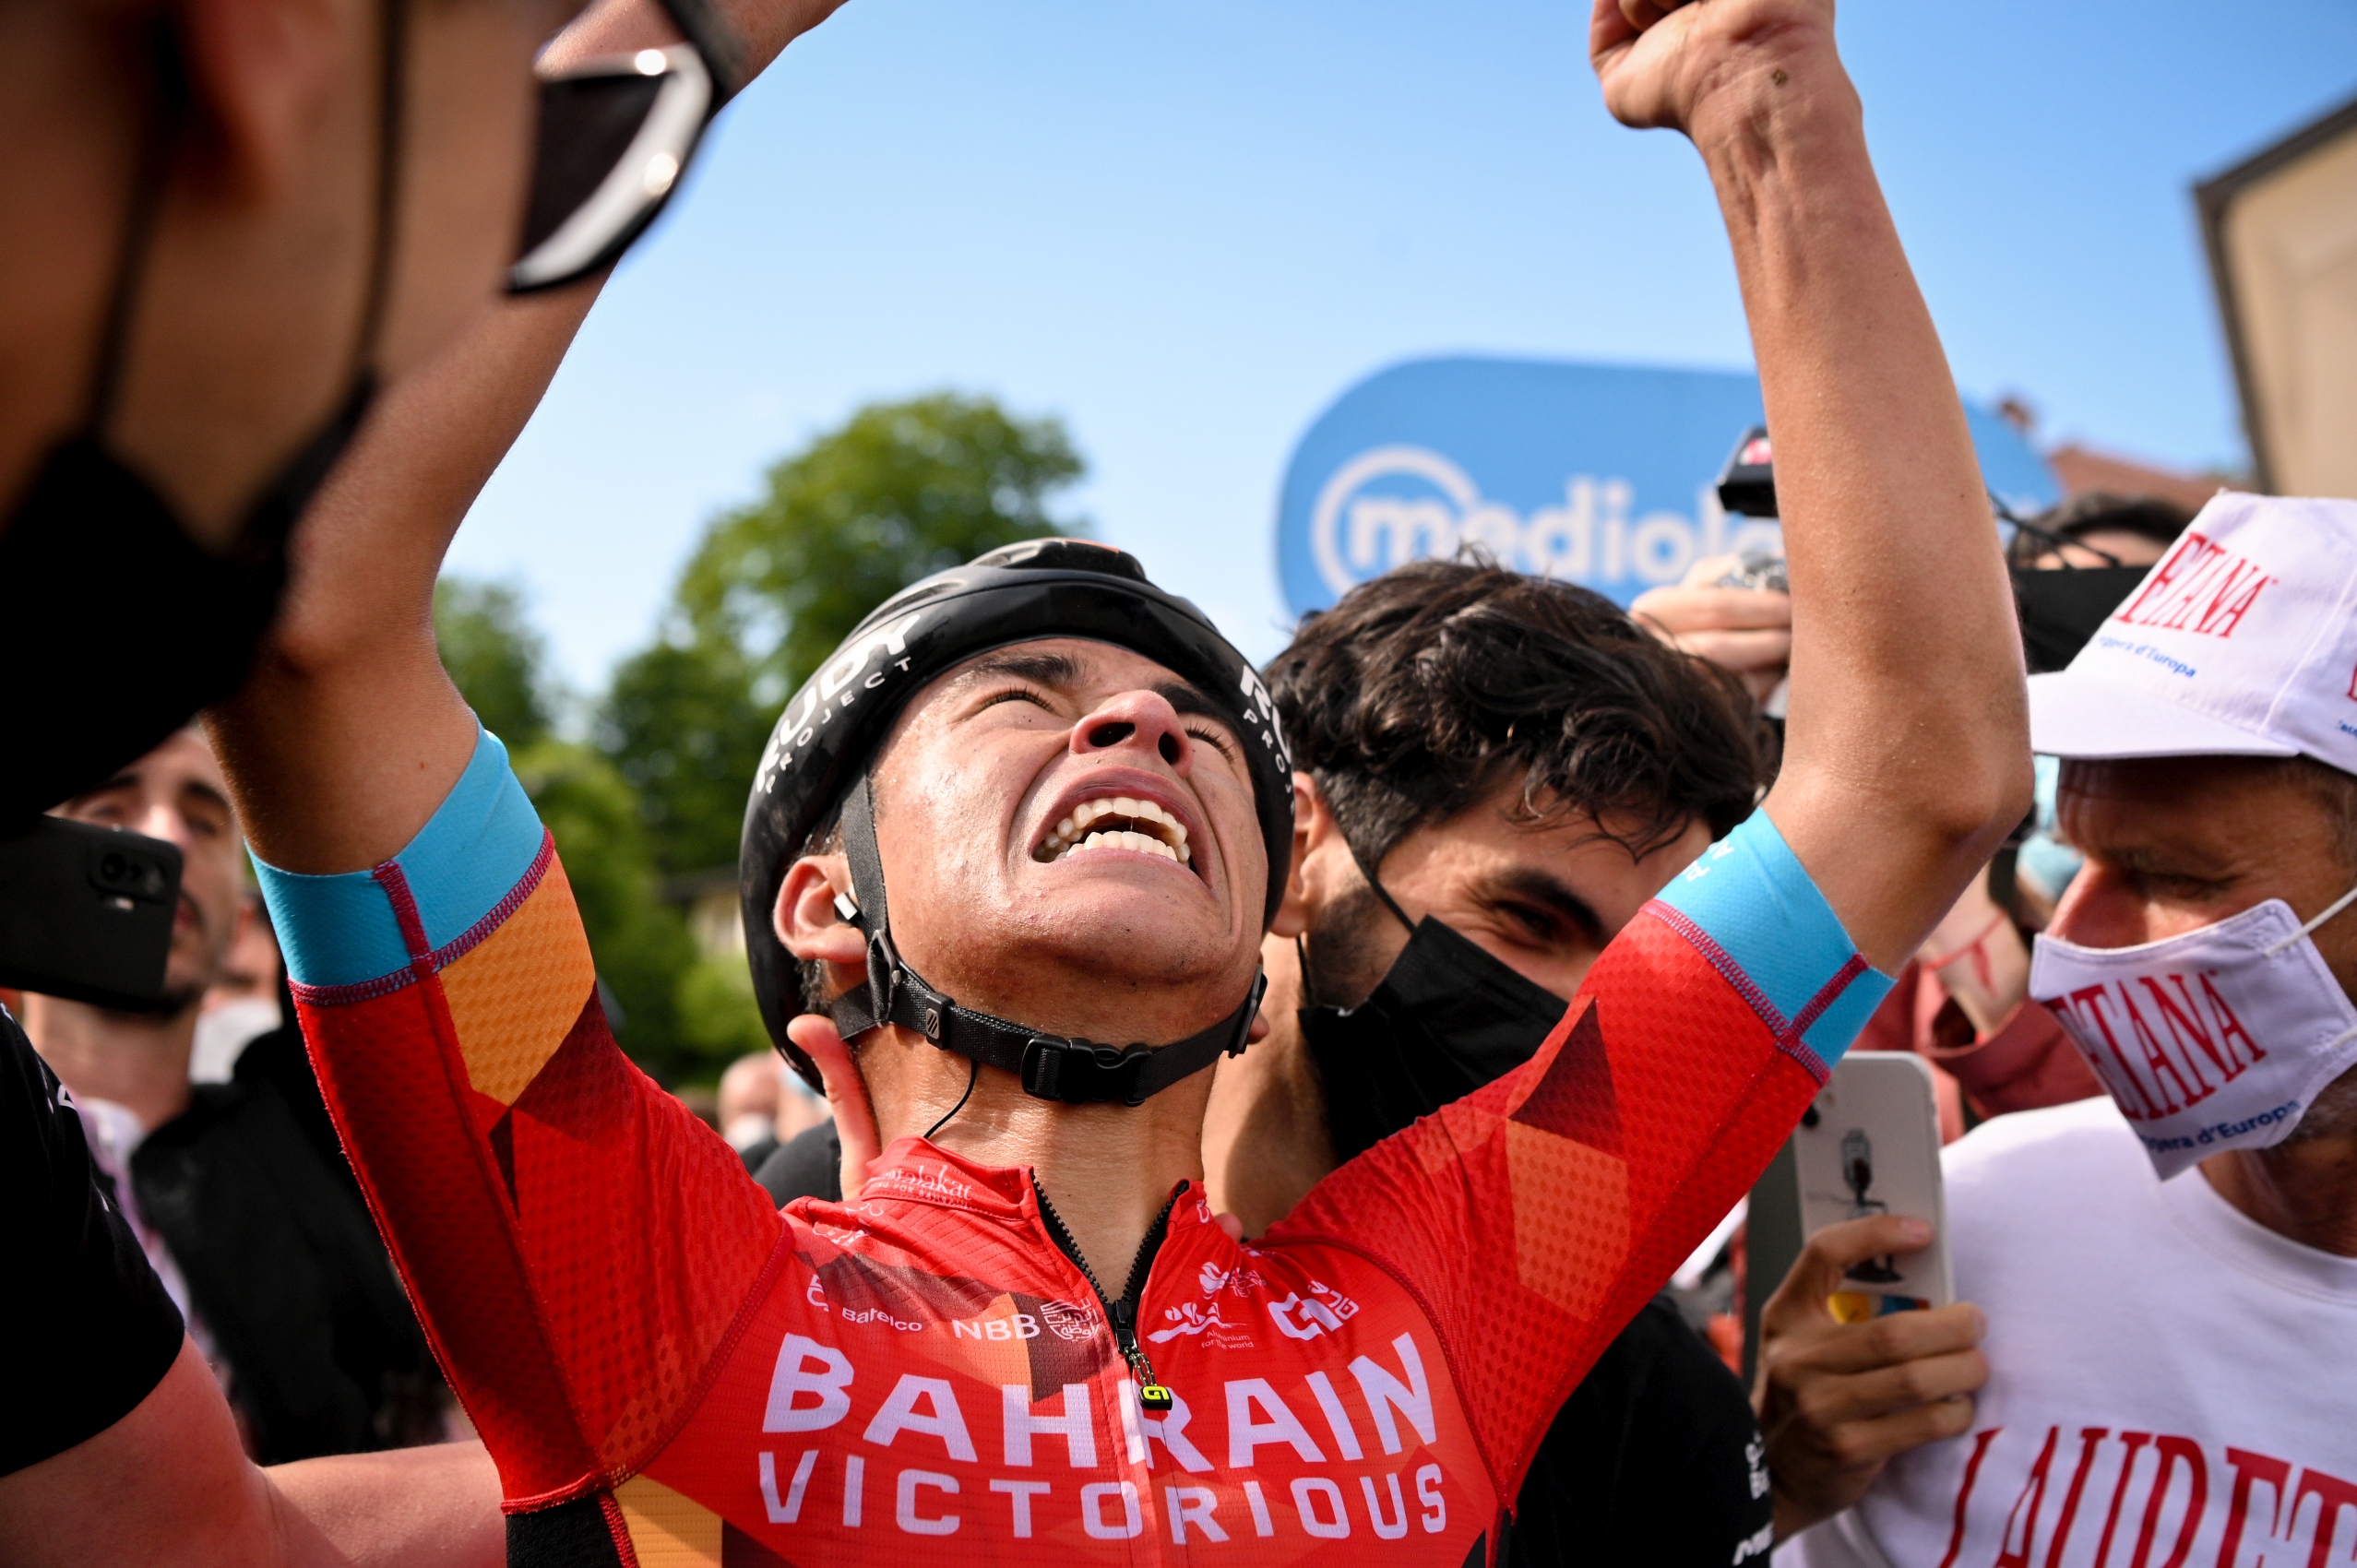 Santiago Buitrago świętuje wygraną etapową podczas Giro d'Italia 2022